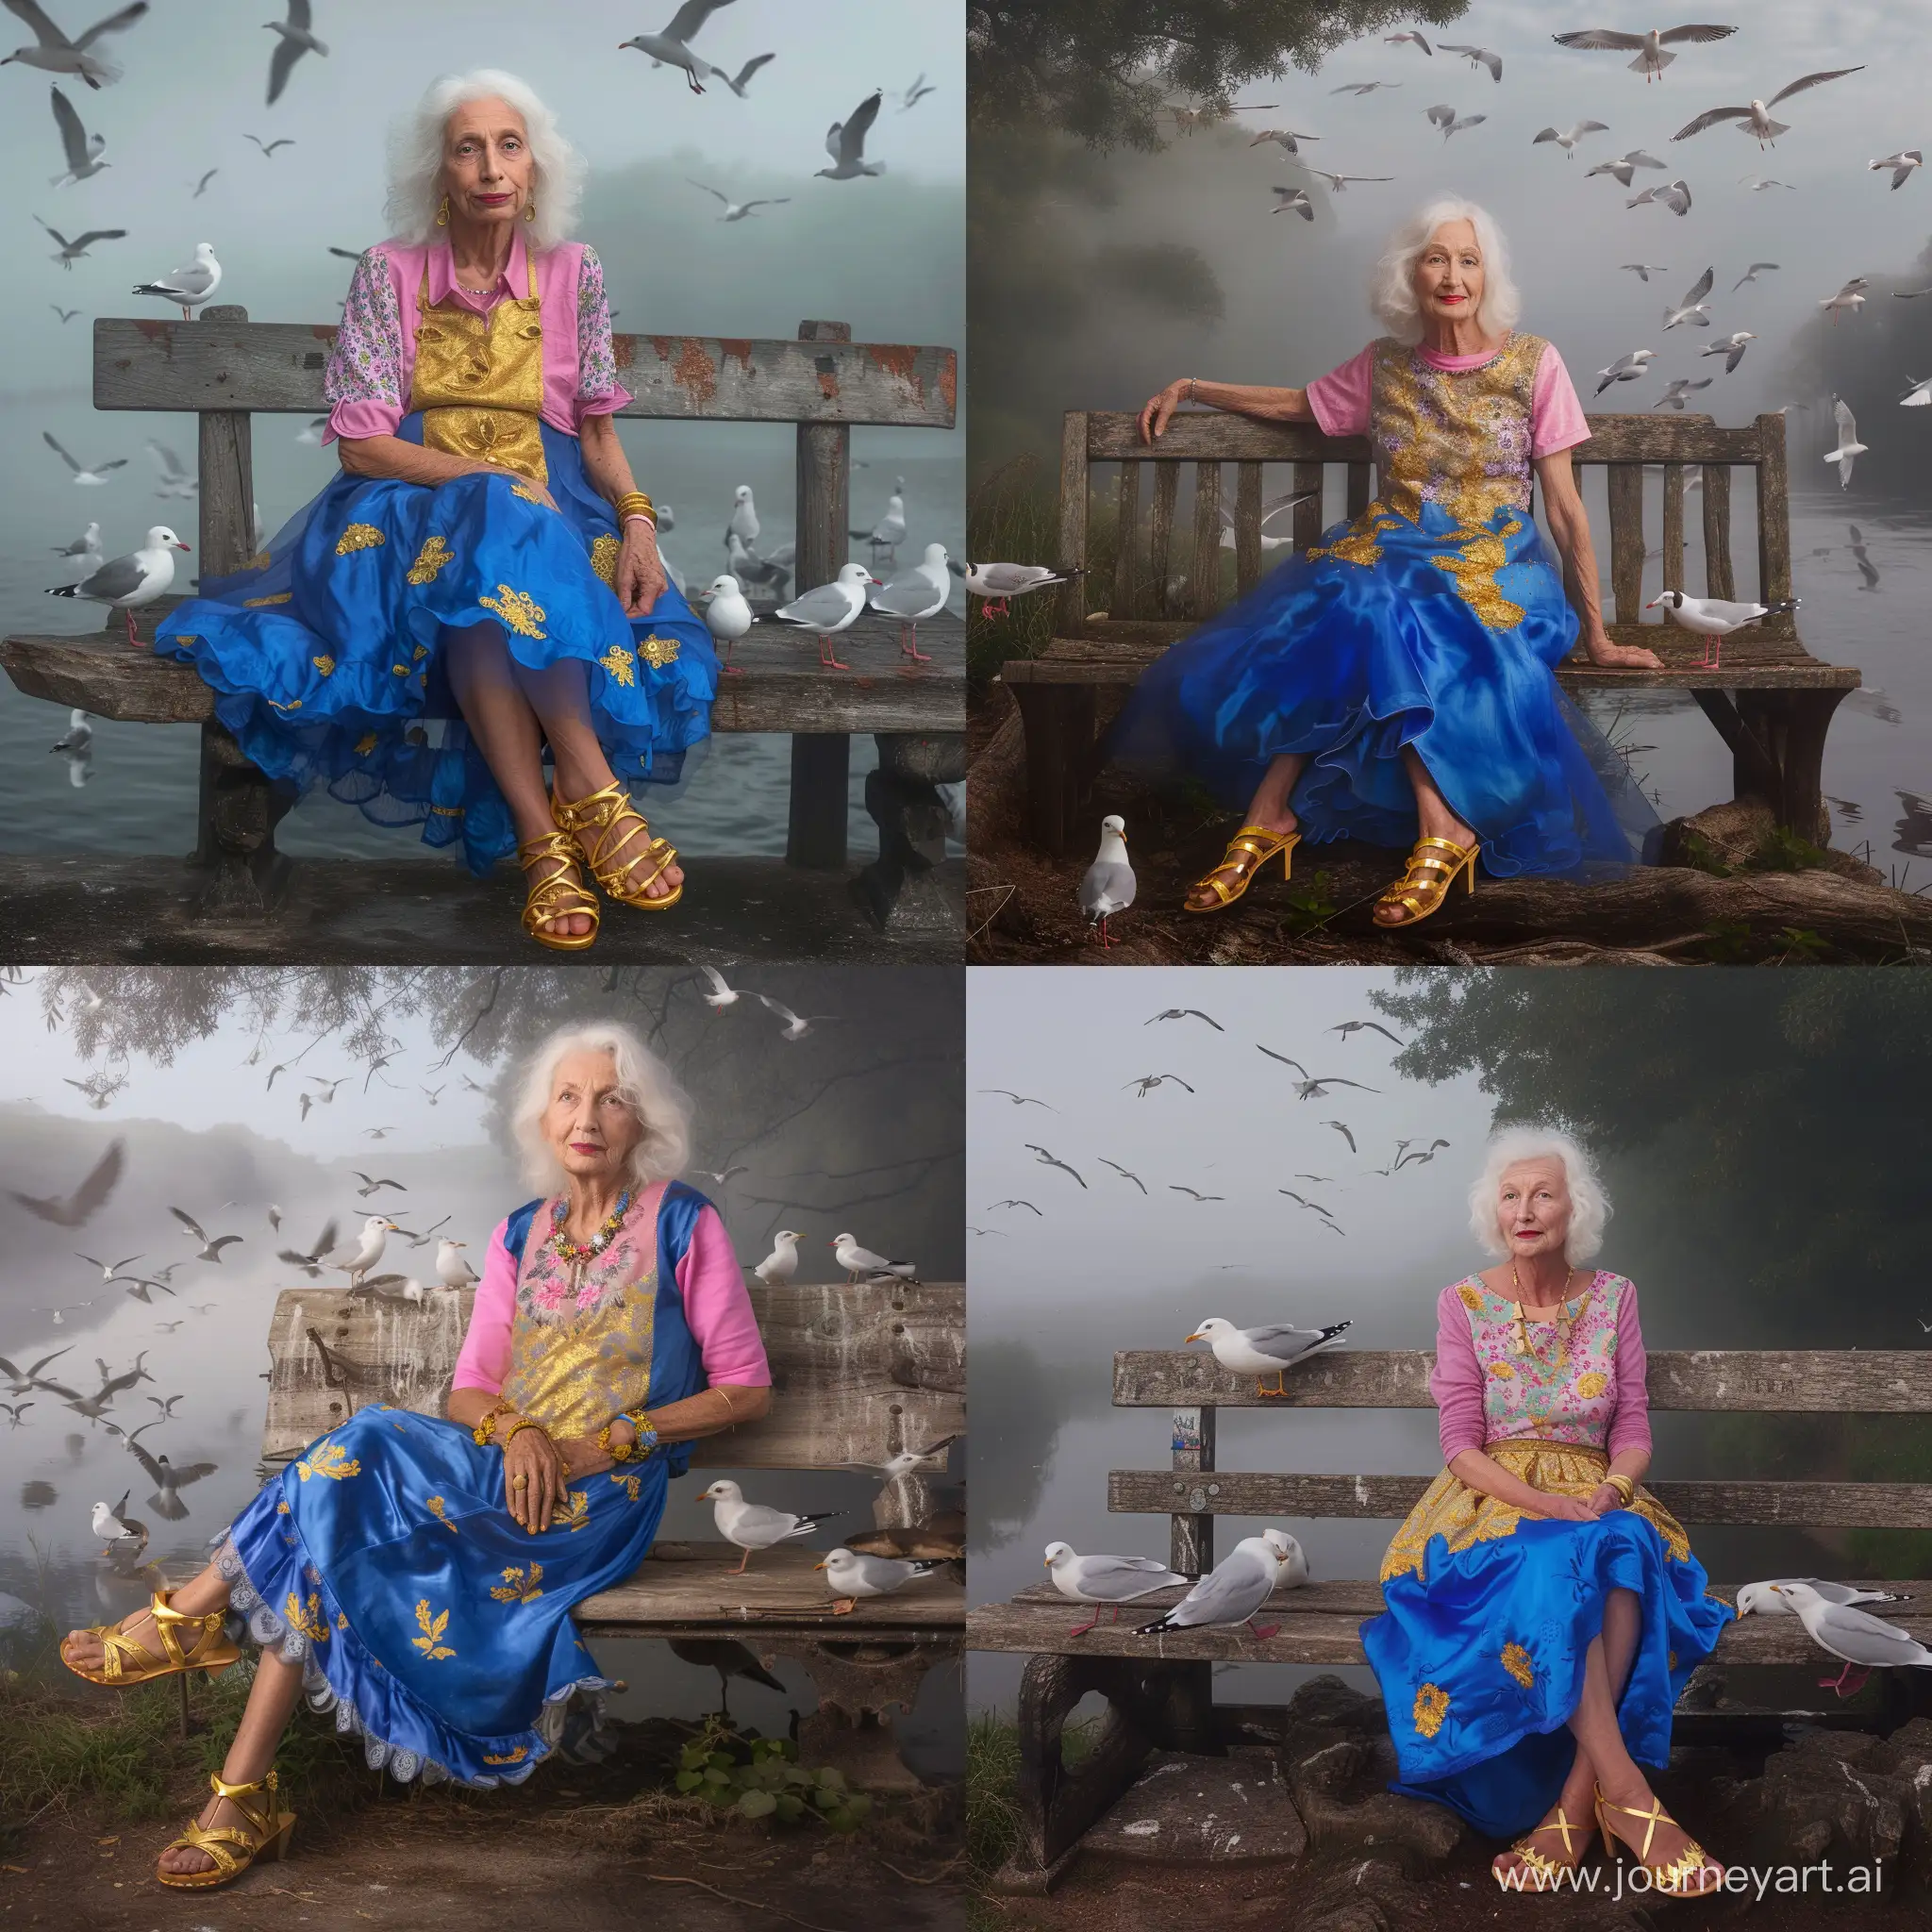 Elegant-Senior-Woman-Enjoying-Riverside-Tranquility-with-Seagulls